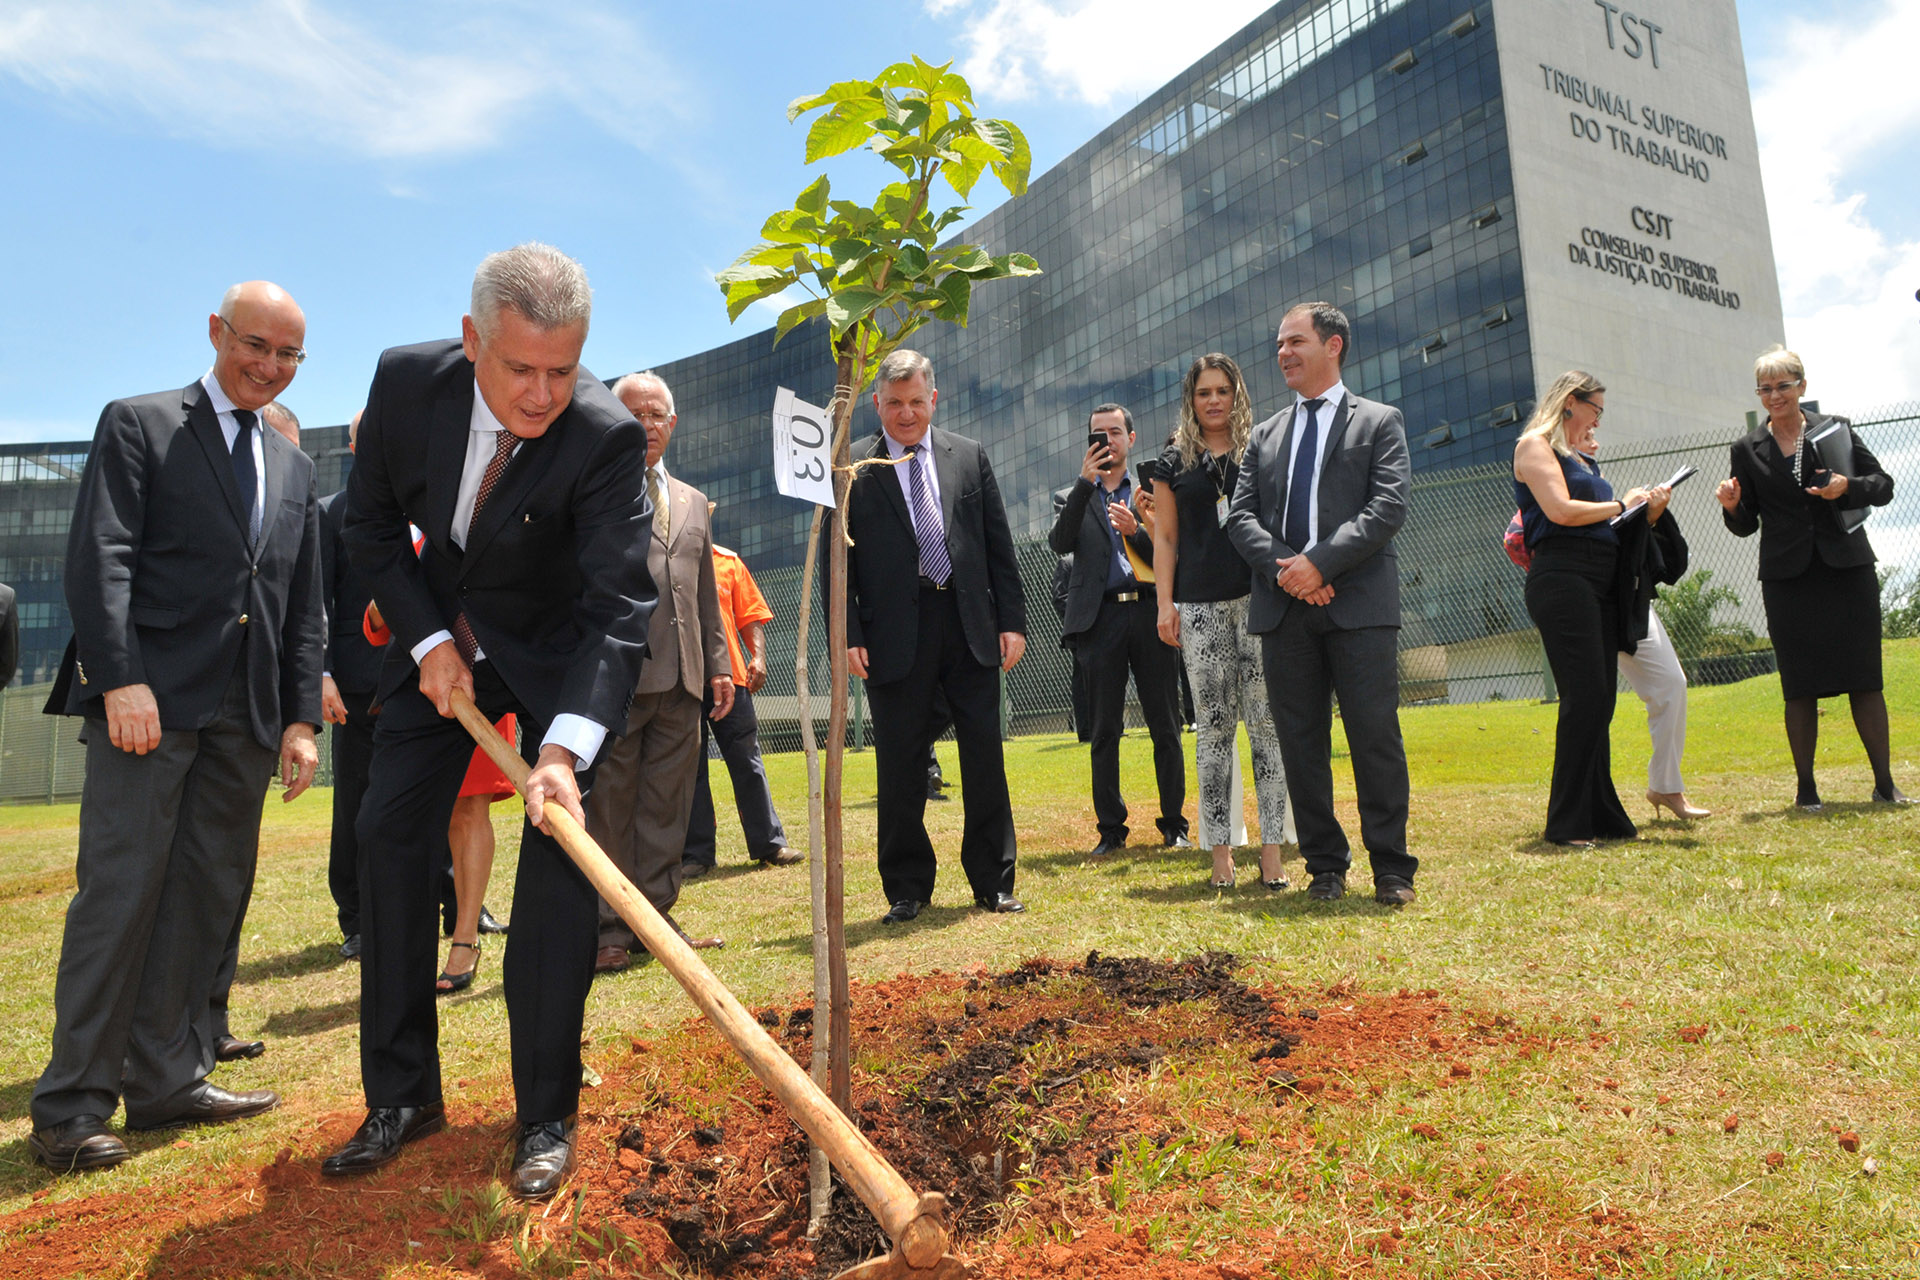 O governador de Brasília, Rodrigo Rollemberg, participou do plantio na manhã desta terça-feira (7), nas proximidades do Tribunal Superior do Trabalho (TST)